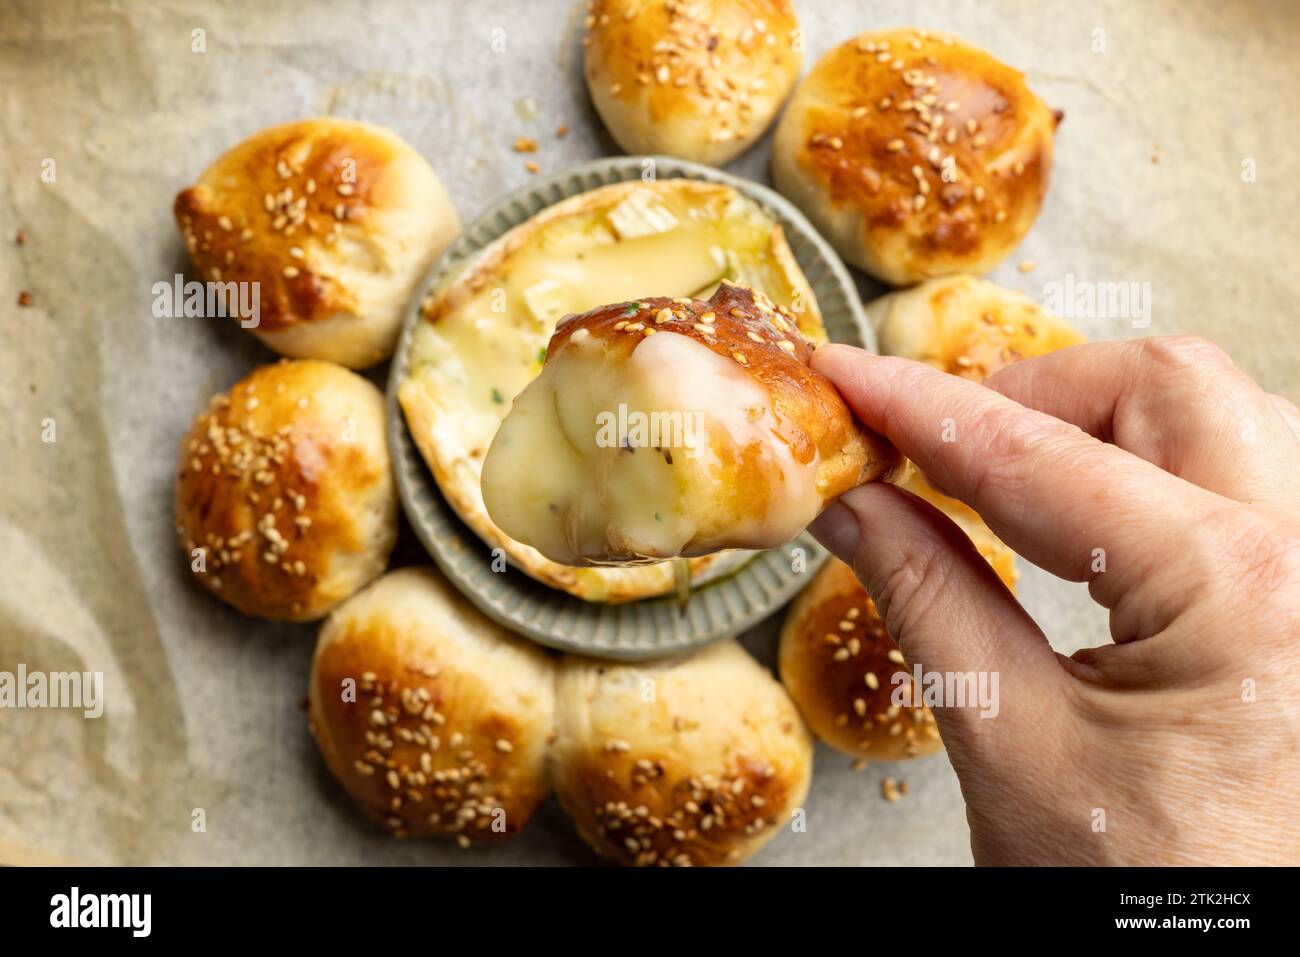 primer plano de panecillos recién horneados con queso brie derretido en mano humana, vista superior Foto de stock